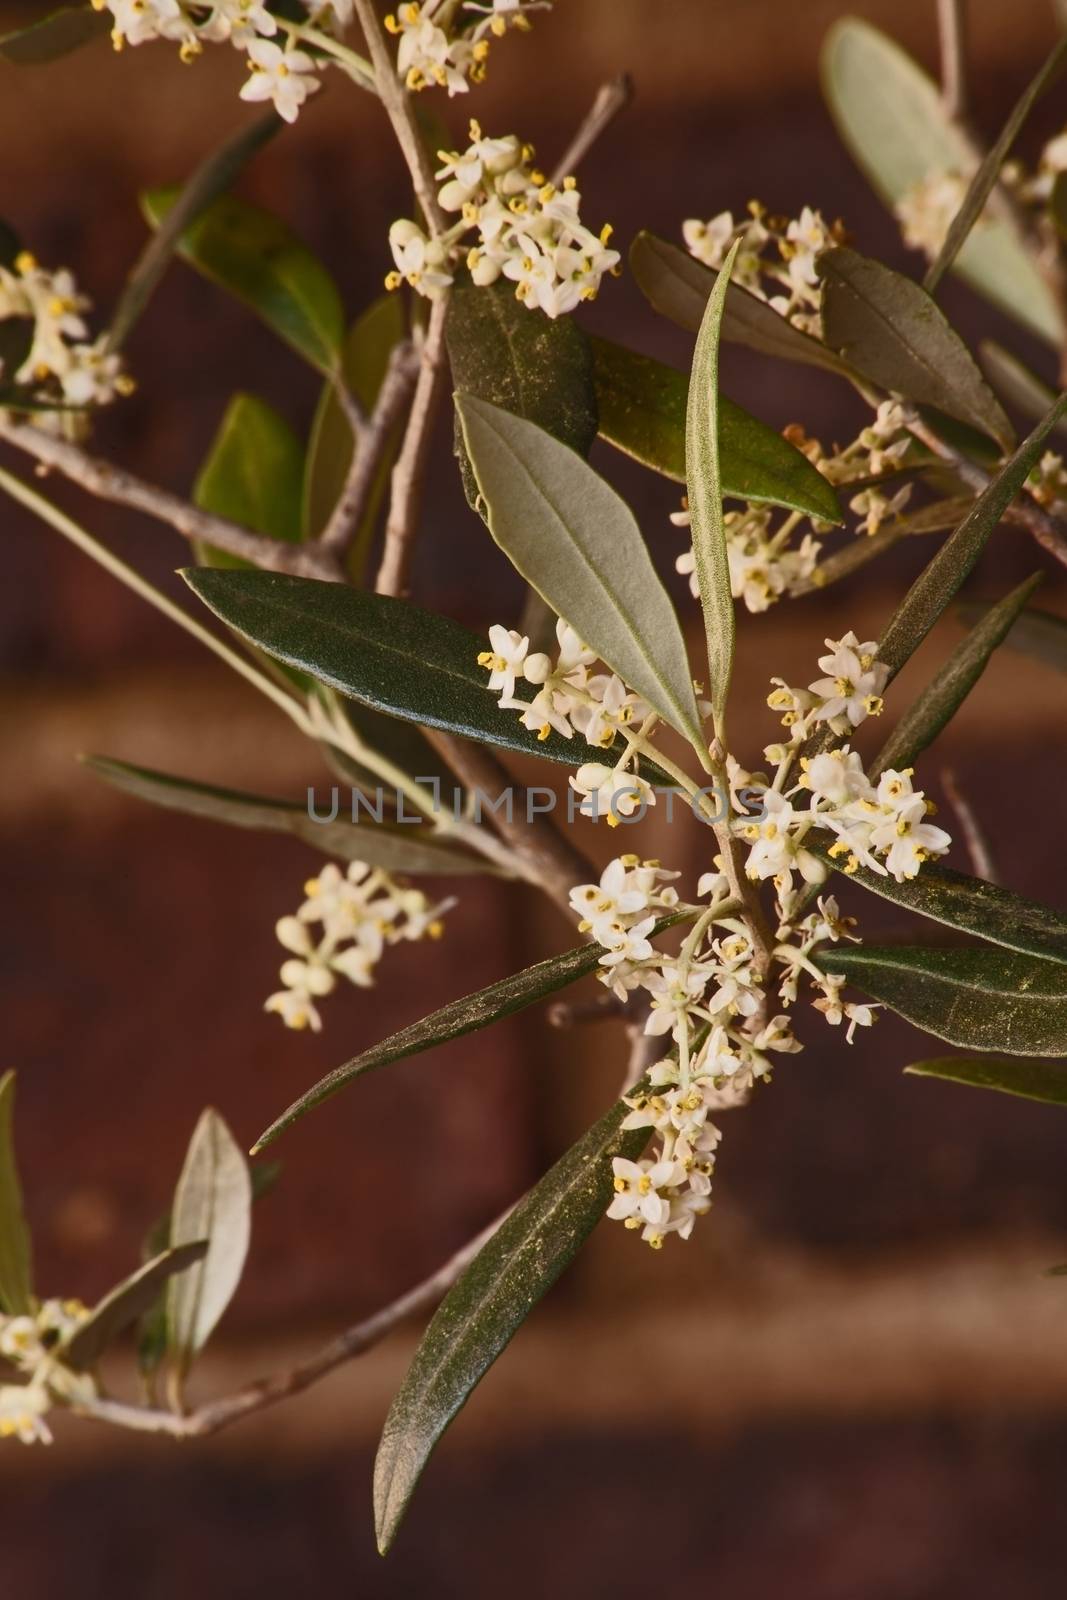 Flowers of the Olive tree (Olea europea) promises a good harvest.